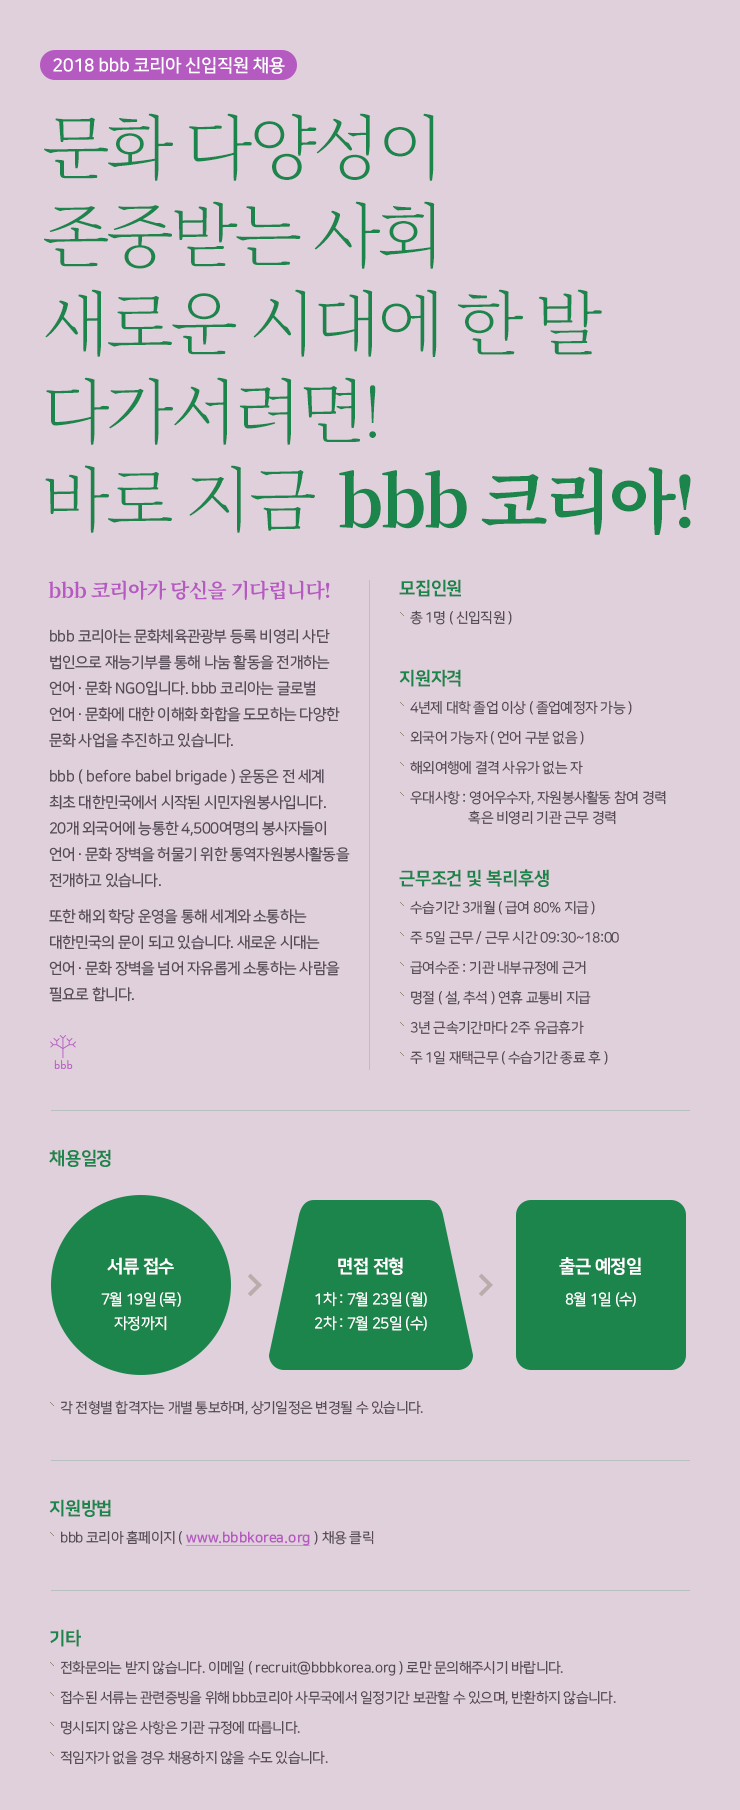 2018 bbb 코리아 신입 채용.png